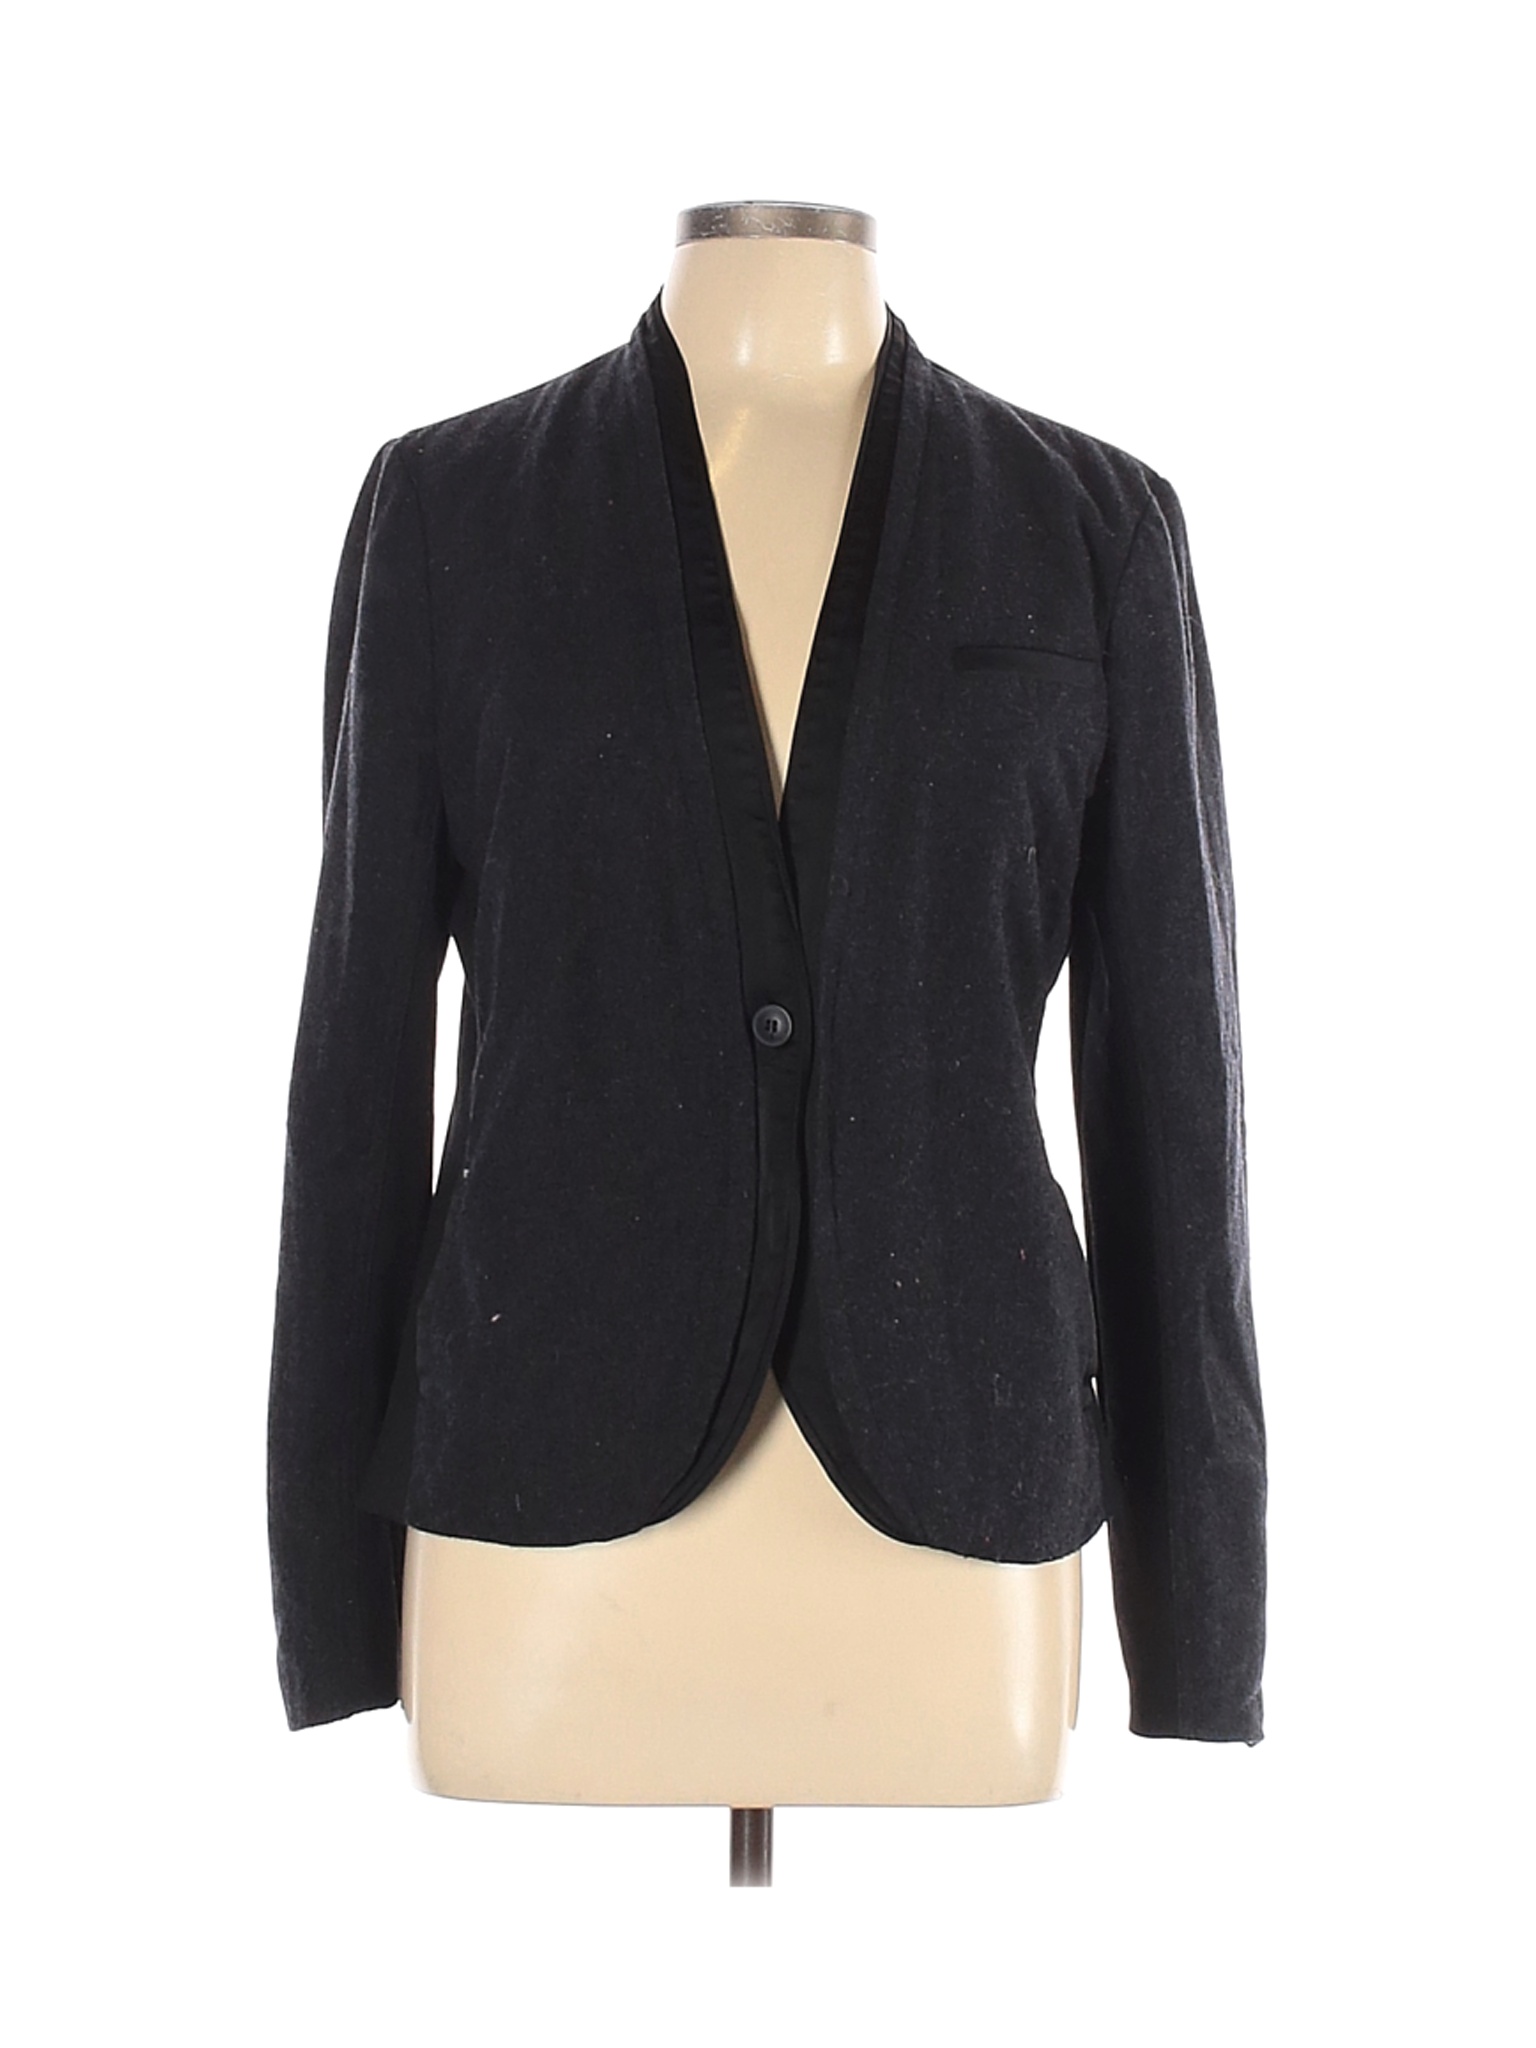 Simply Vera Vera Wang Women Black Wool Blazer L | eBay